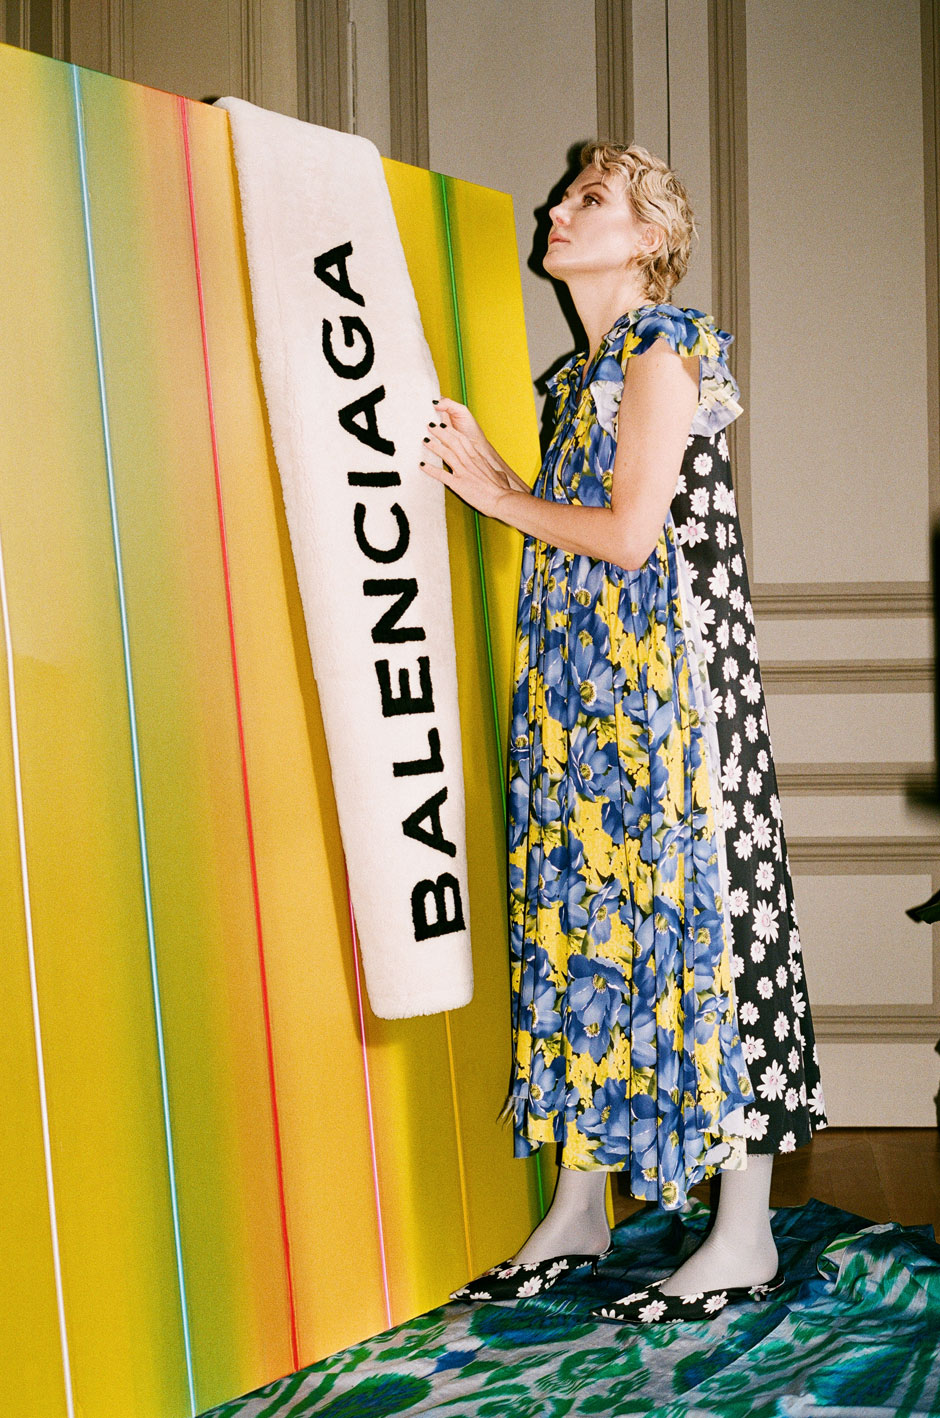 Рената Литвинова в съемке Balenciaga и SVMoscow (фото 8)